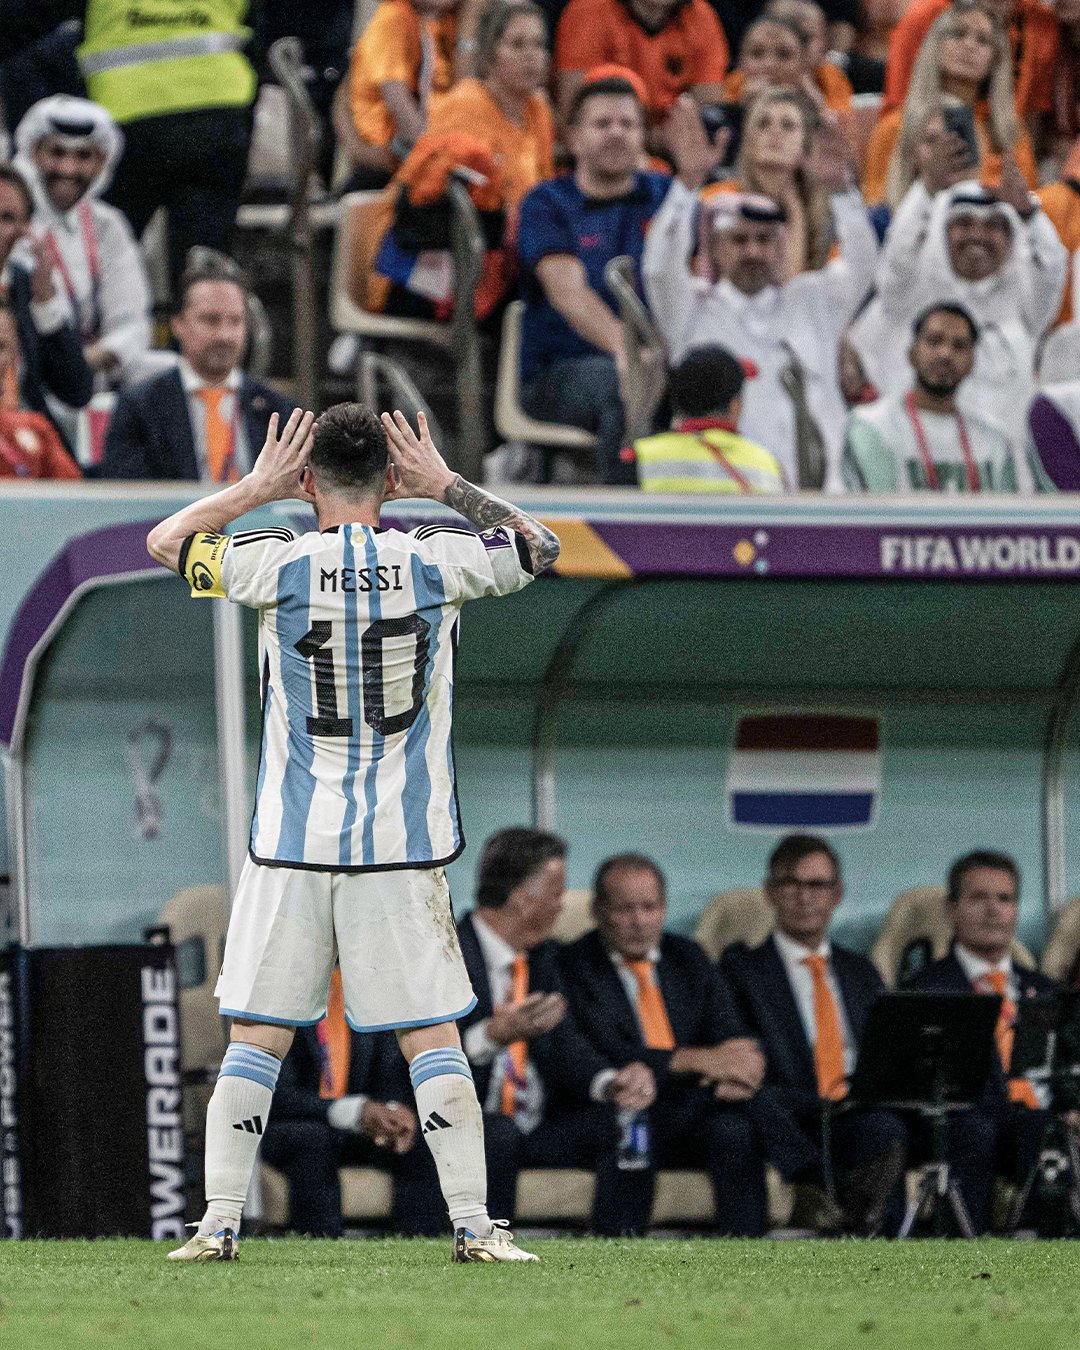 Lionel Messi đã thể hiện sự xuất sắc khi ghi bàn thắng quan trọng cho tuyển Hà Lan. Hãy xem hình ảnh này để được chiêm ngưỡng sự ăn mừng đầy cảm xúc của anh ta. Bạn sẽ thấy rằng sự nghiệp của một cầu thủ hàng đầu thế giới là sự kết hợp hoàn hảo giữa tài năng và cảm xúc.